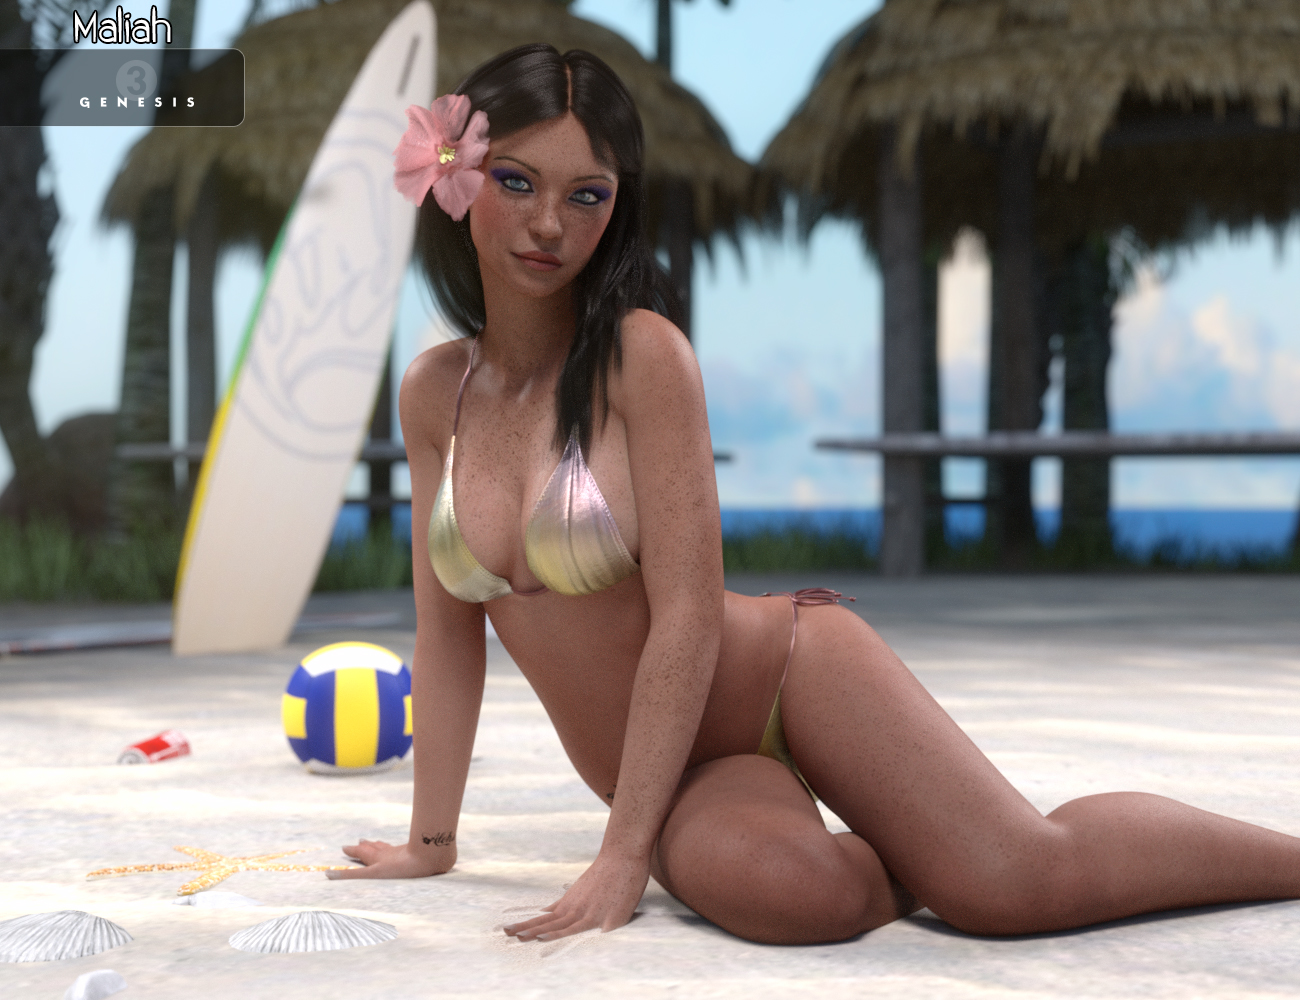 Maliah for Genesis 3 Female by: VincentXyooj, 3D Models by Daz 3D